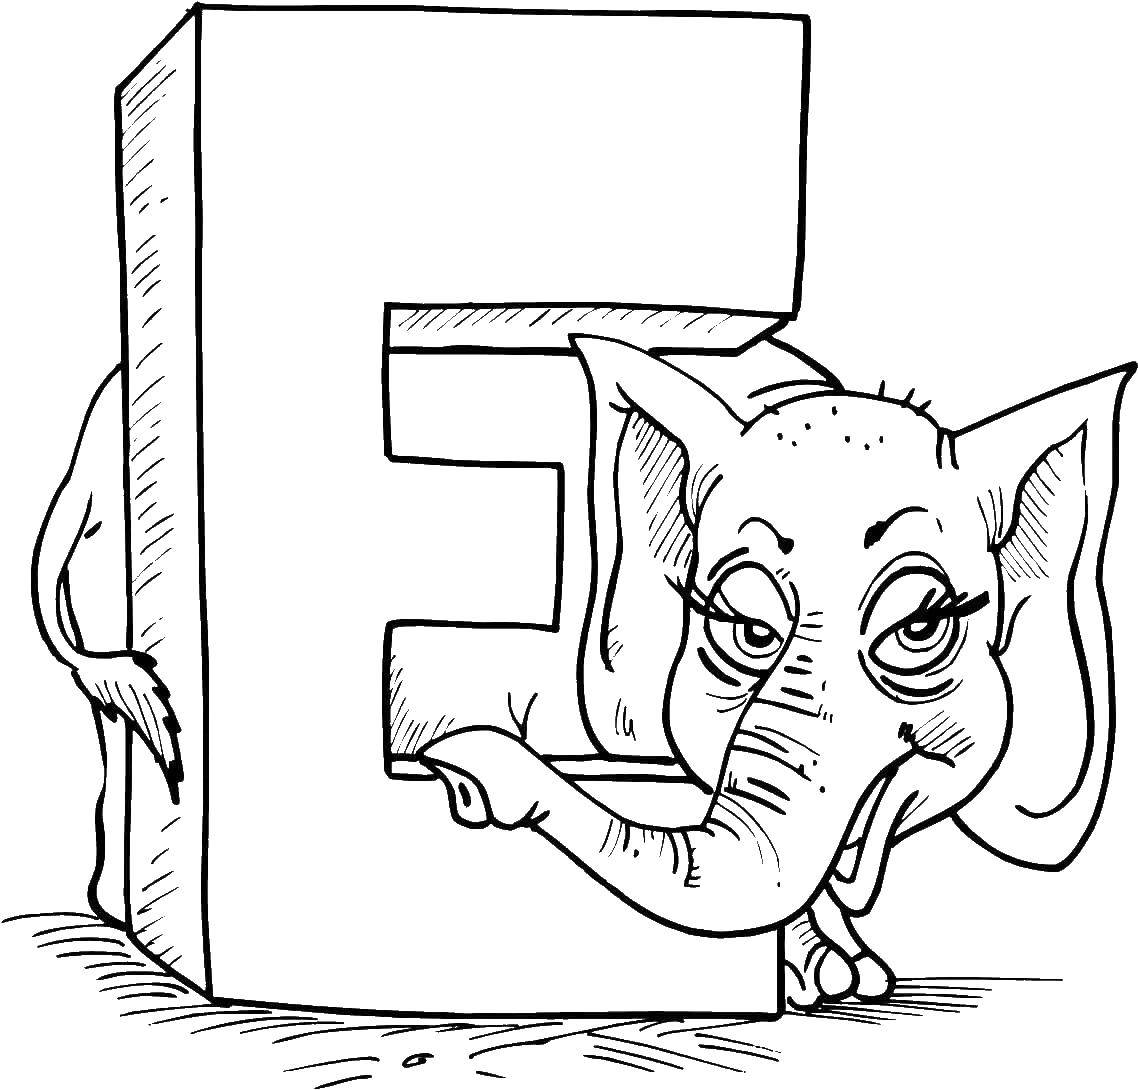 Название: Раскраска Слон и английская буква e. Категория: Английский алфавит. Теги: слон, буква E.